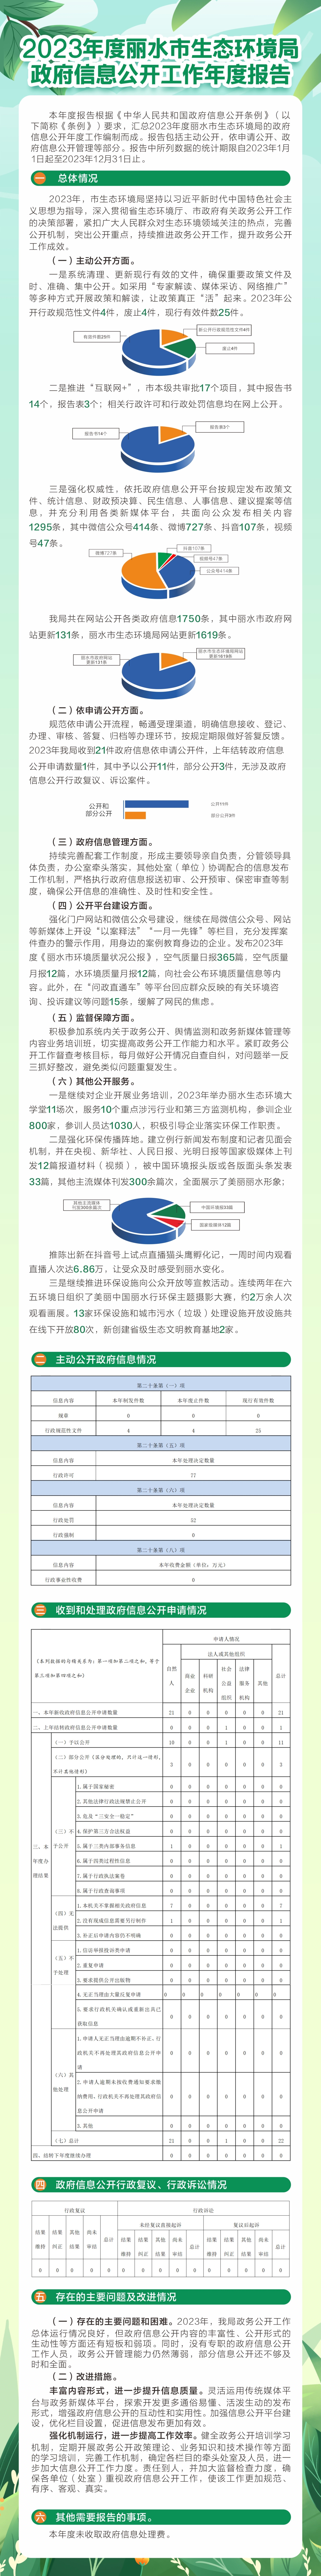 2023丽水市生态环境局政务公开工作（图解）.jpg